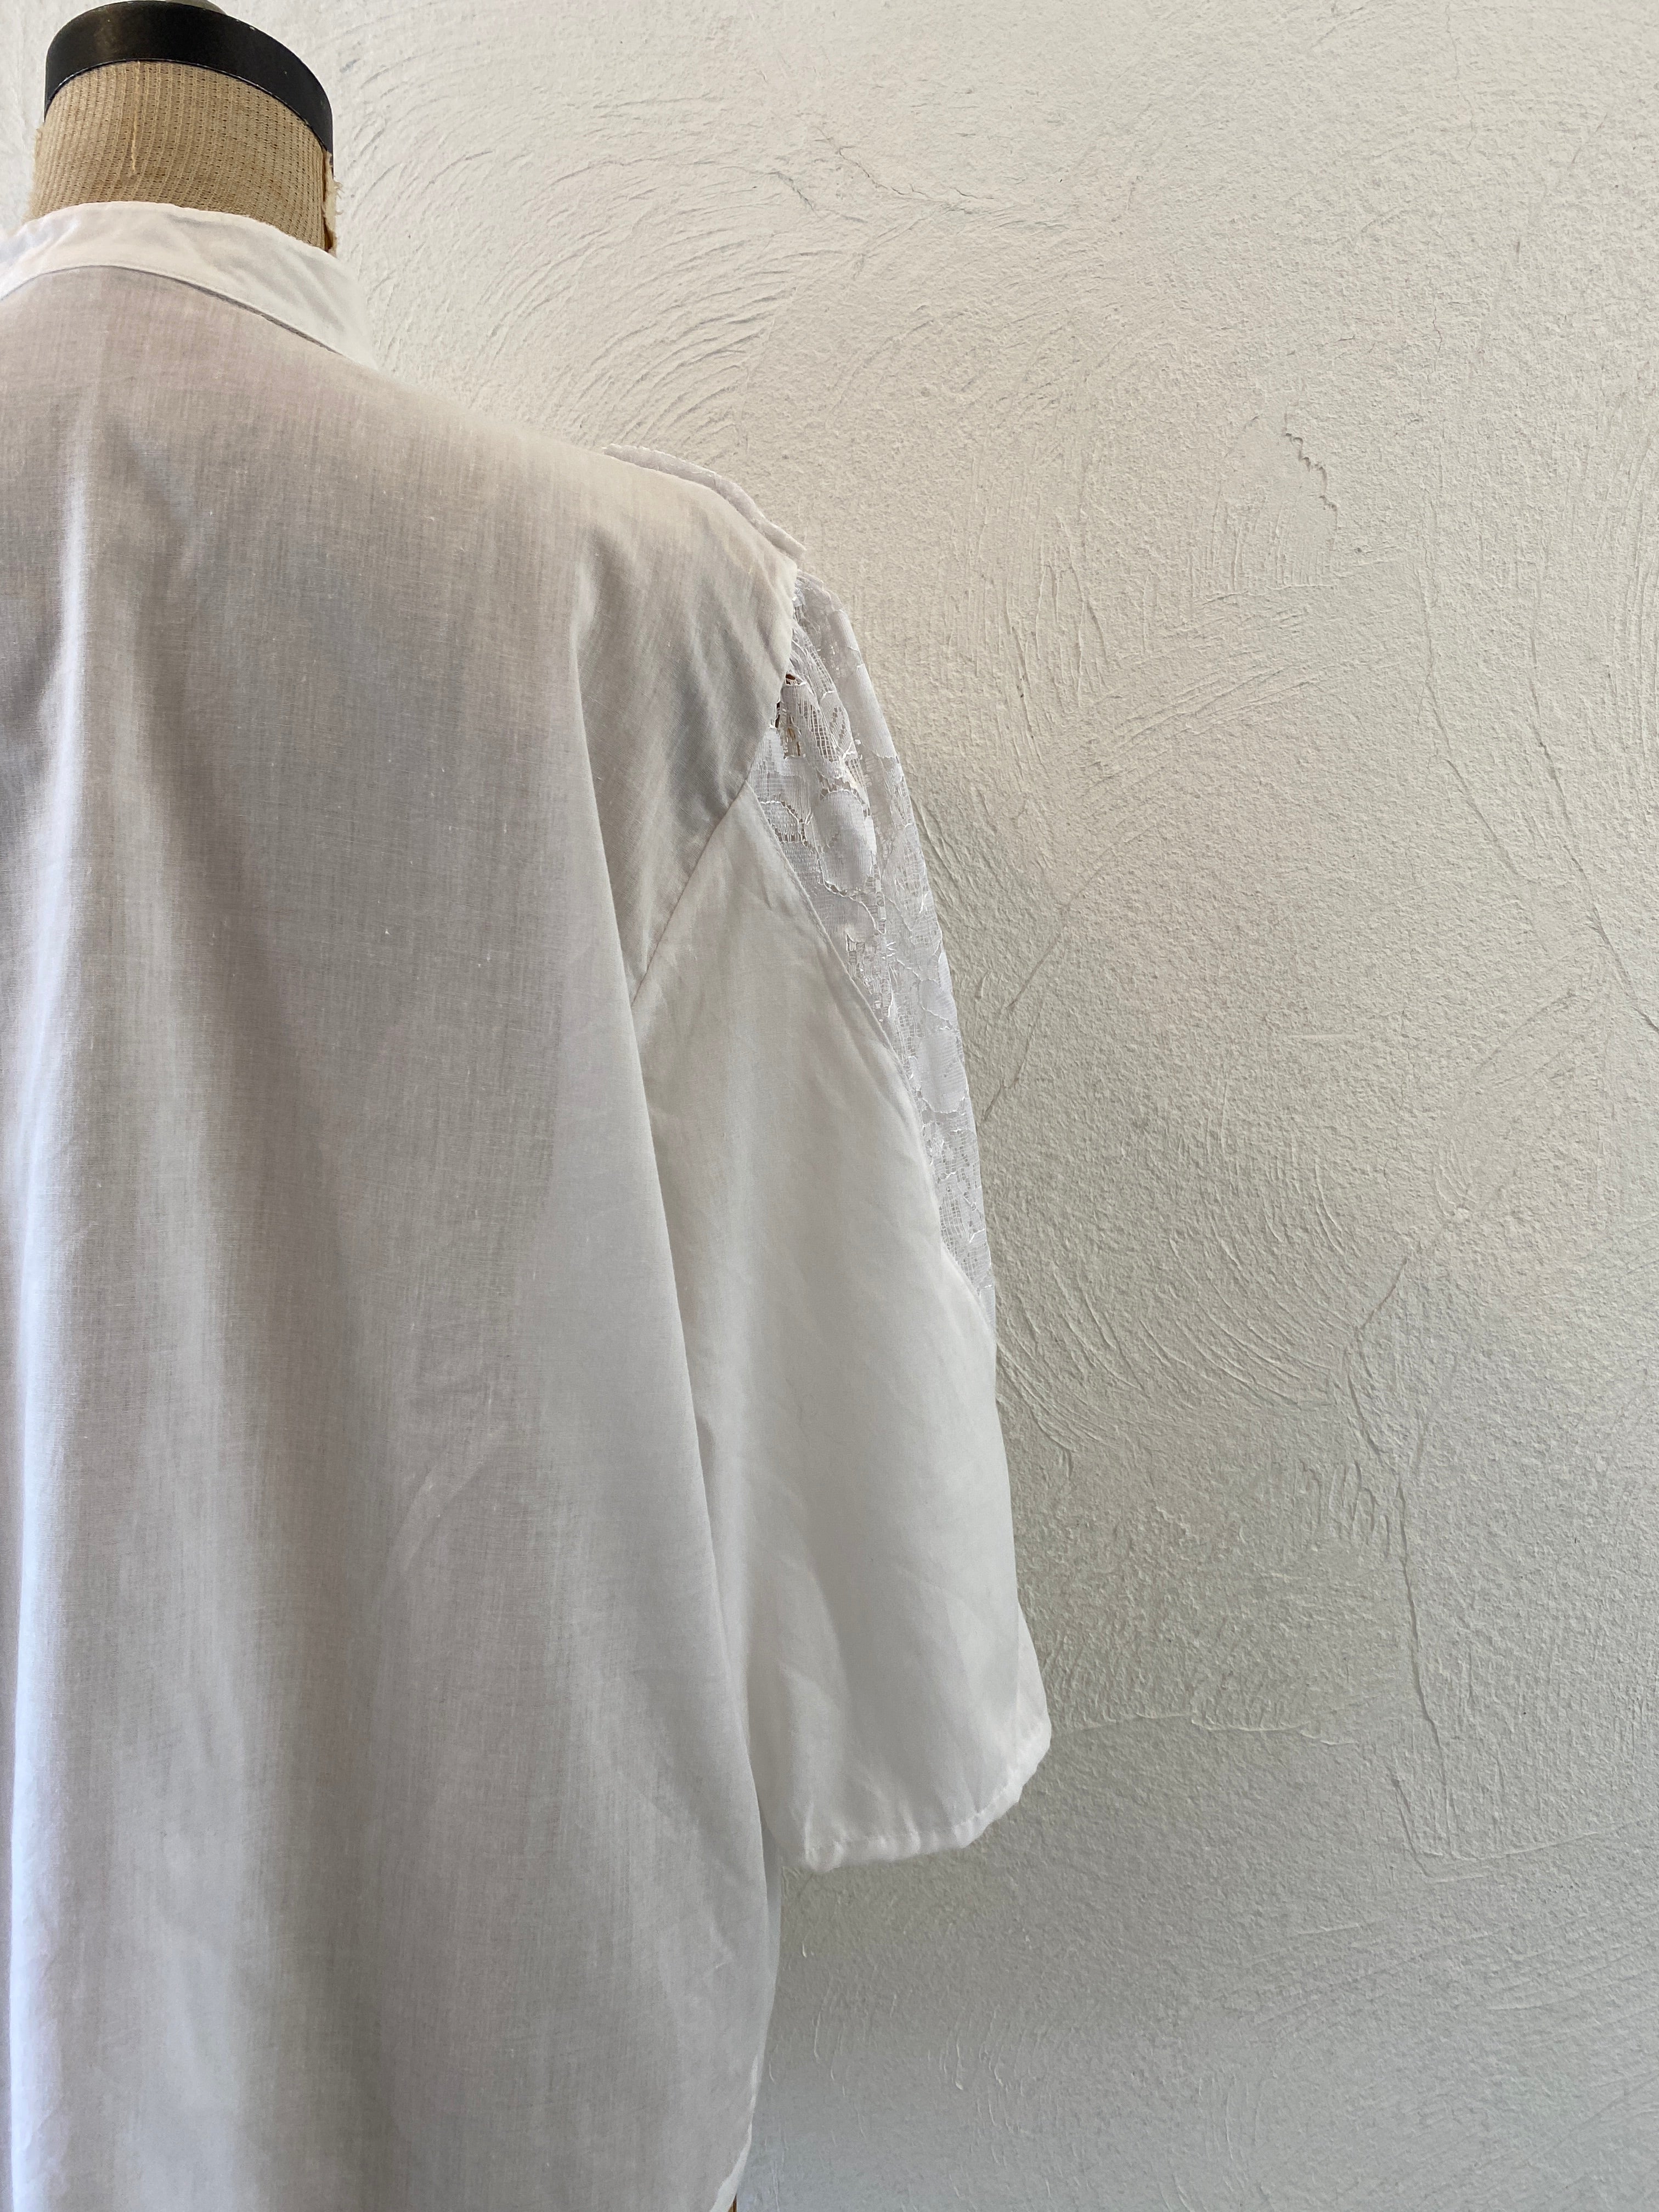 white lace blouse